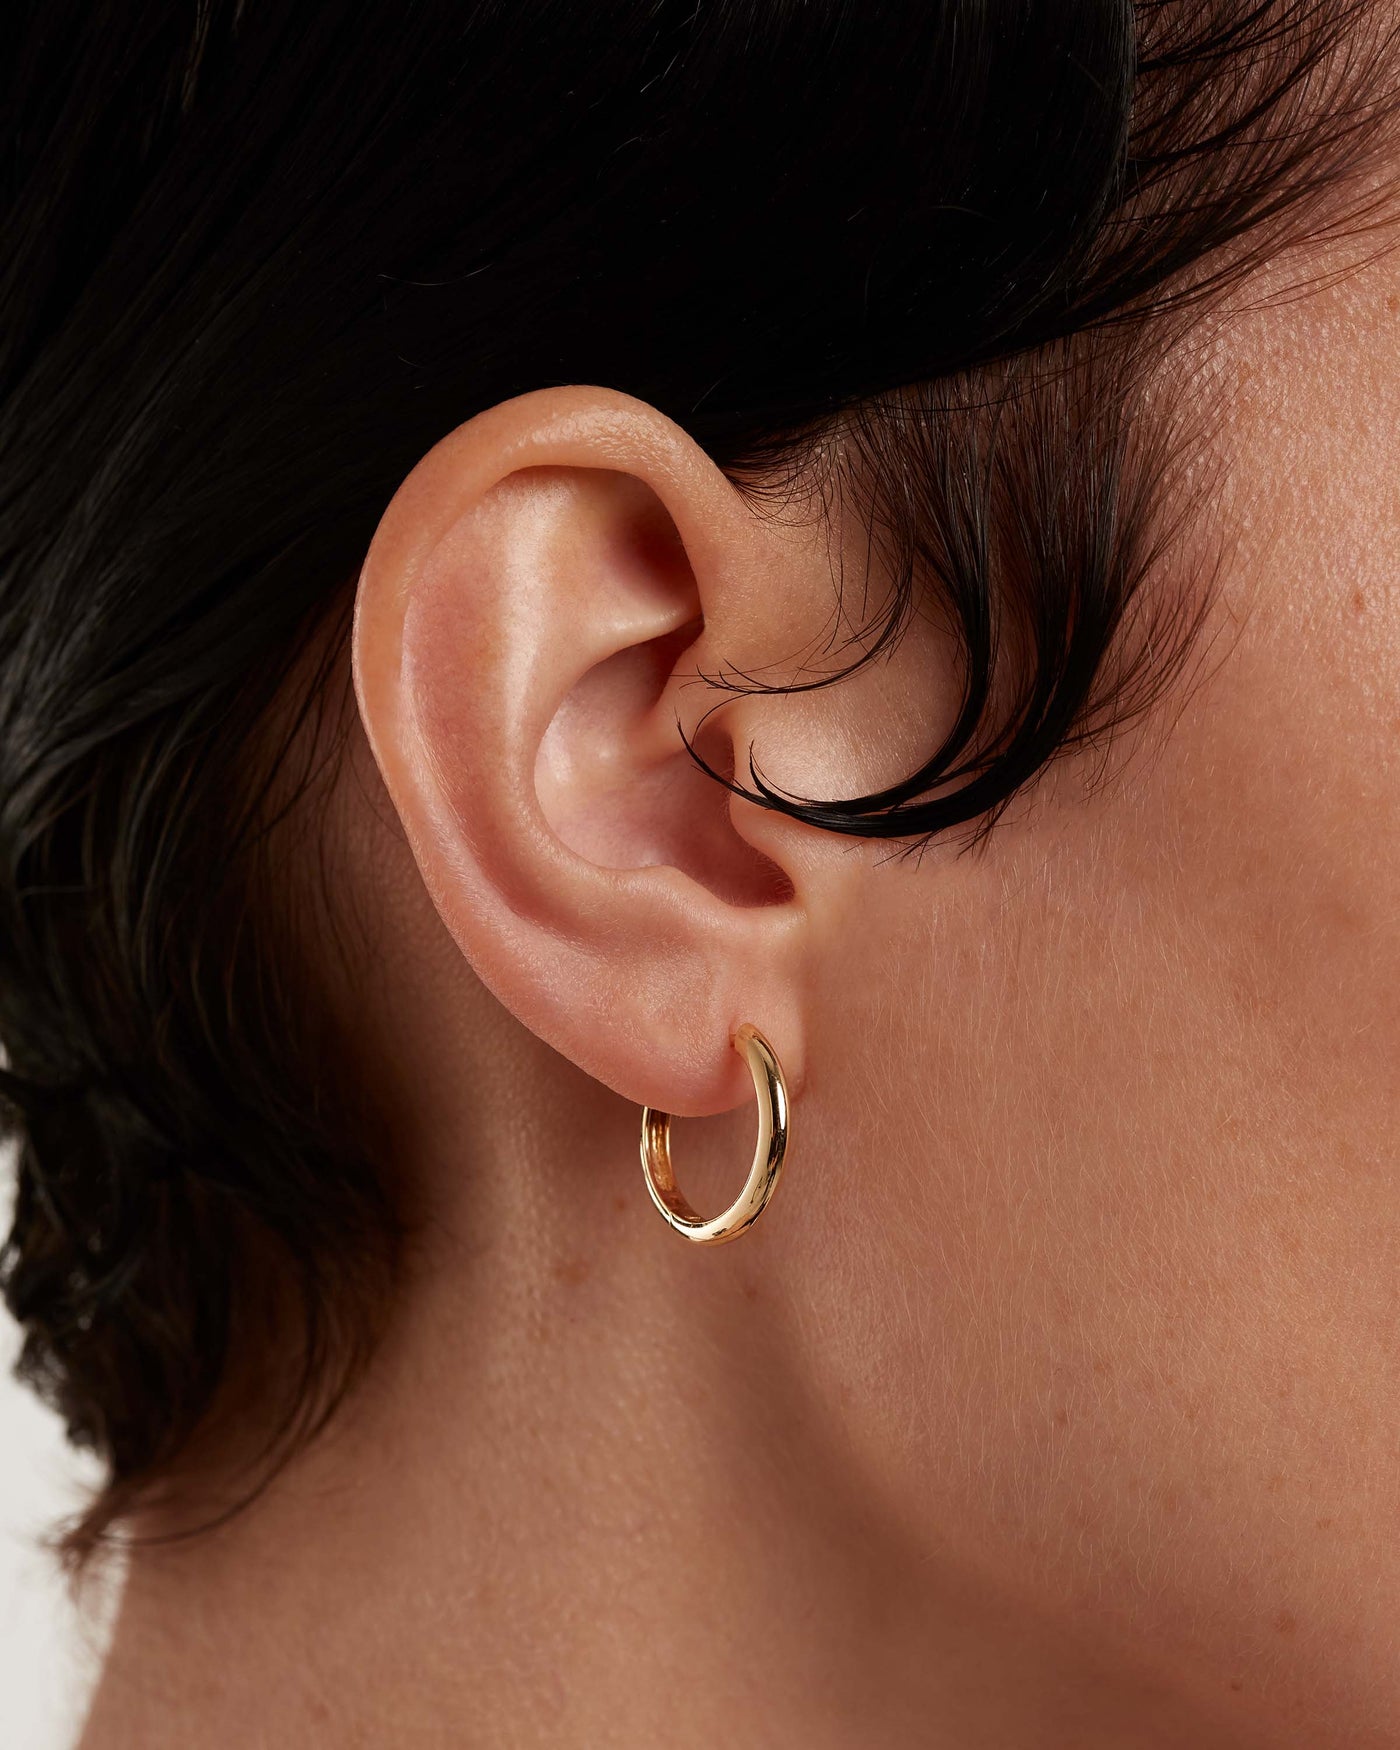 18 Karat Gold Small Medium Hoop Earrings – NUE Hoops